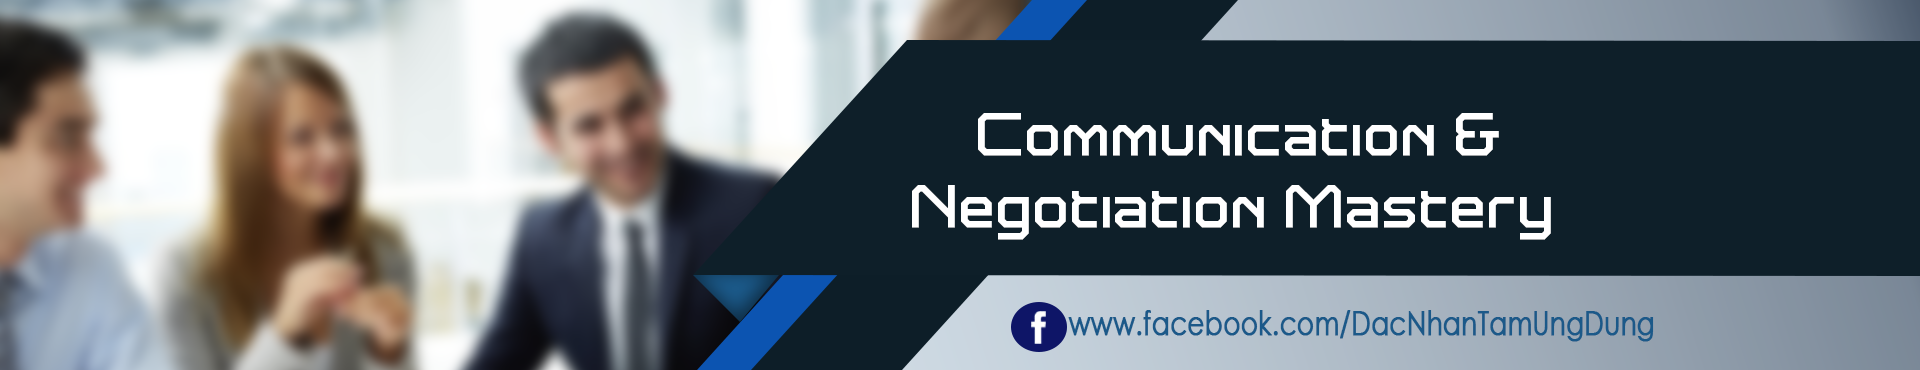 Communication & Negotiation Mastery